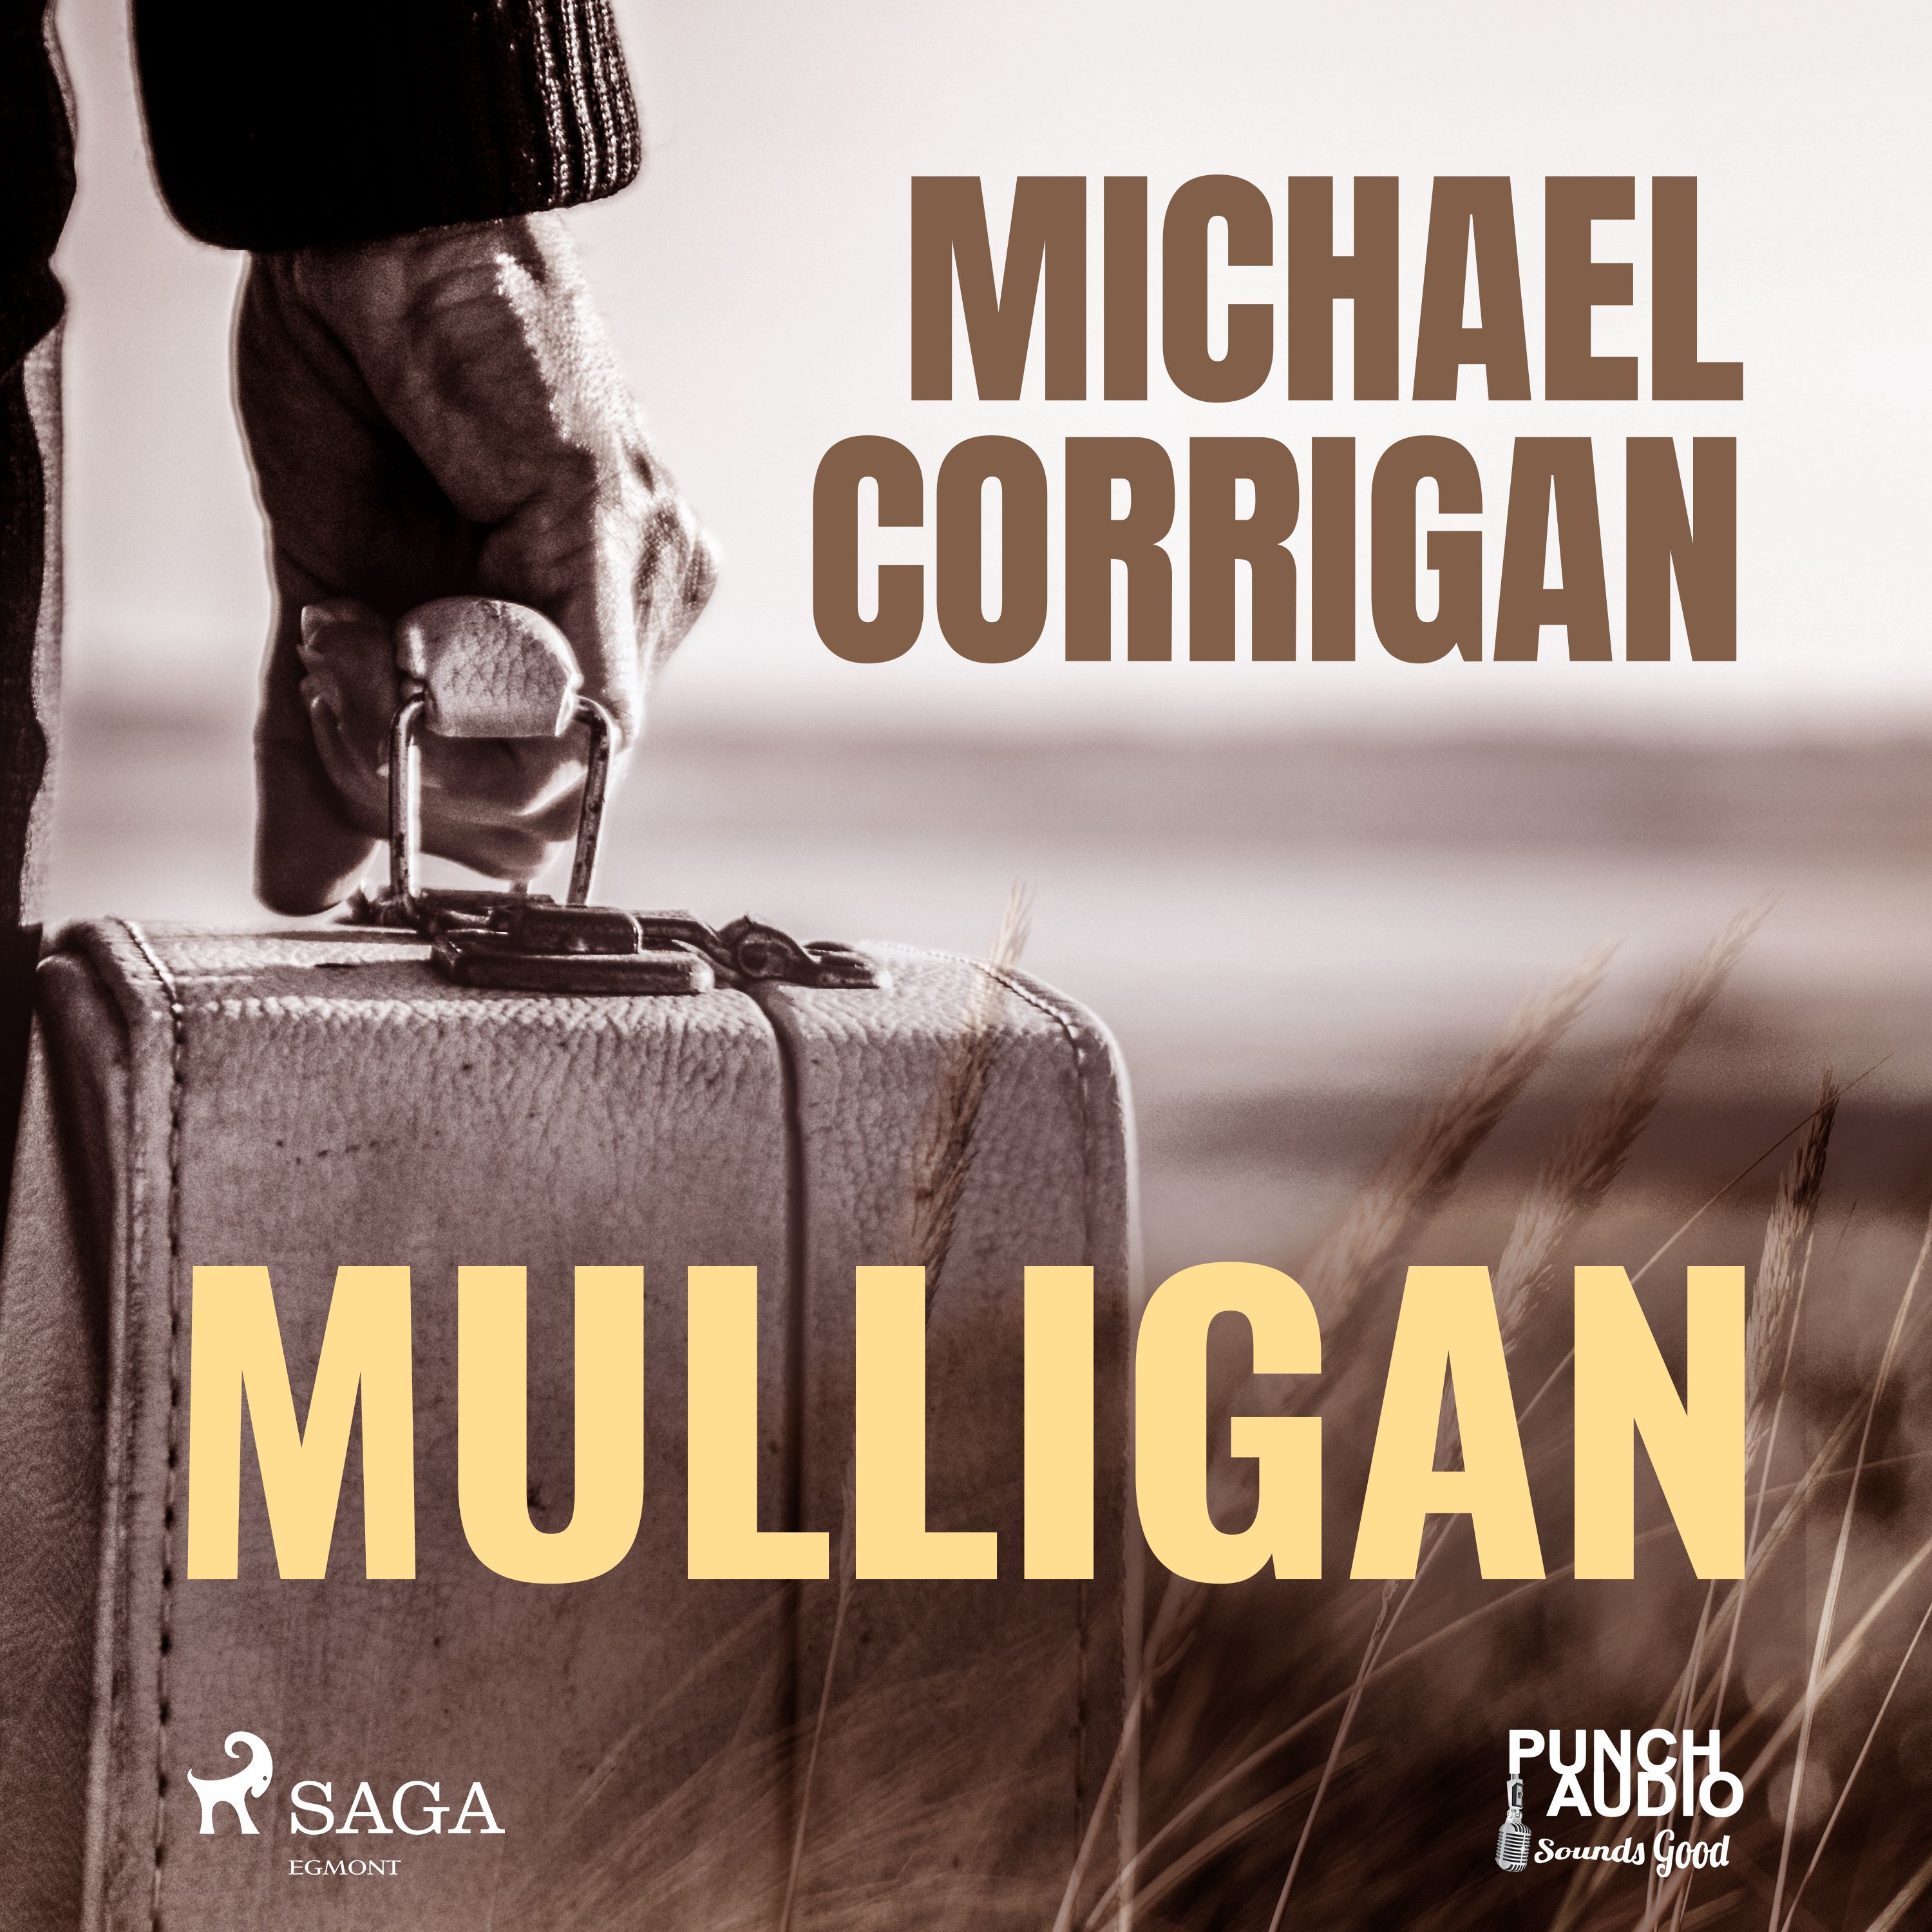 Mulligan, ljudbok av Michael Corrigan